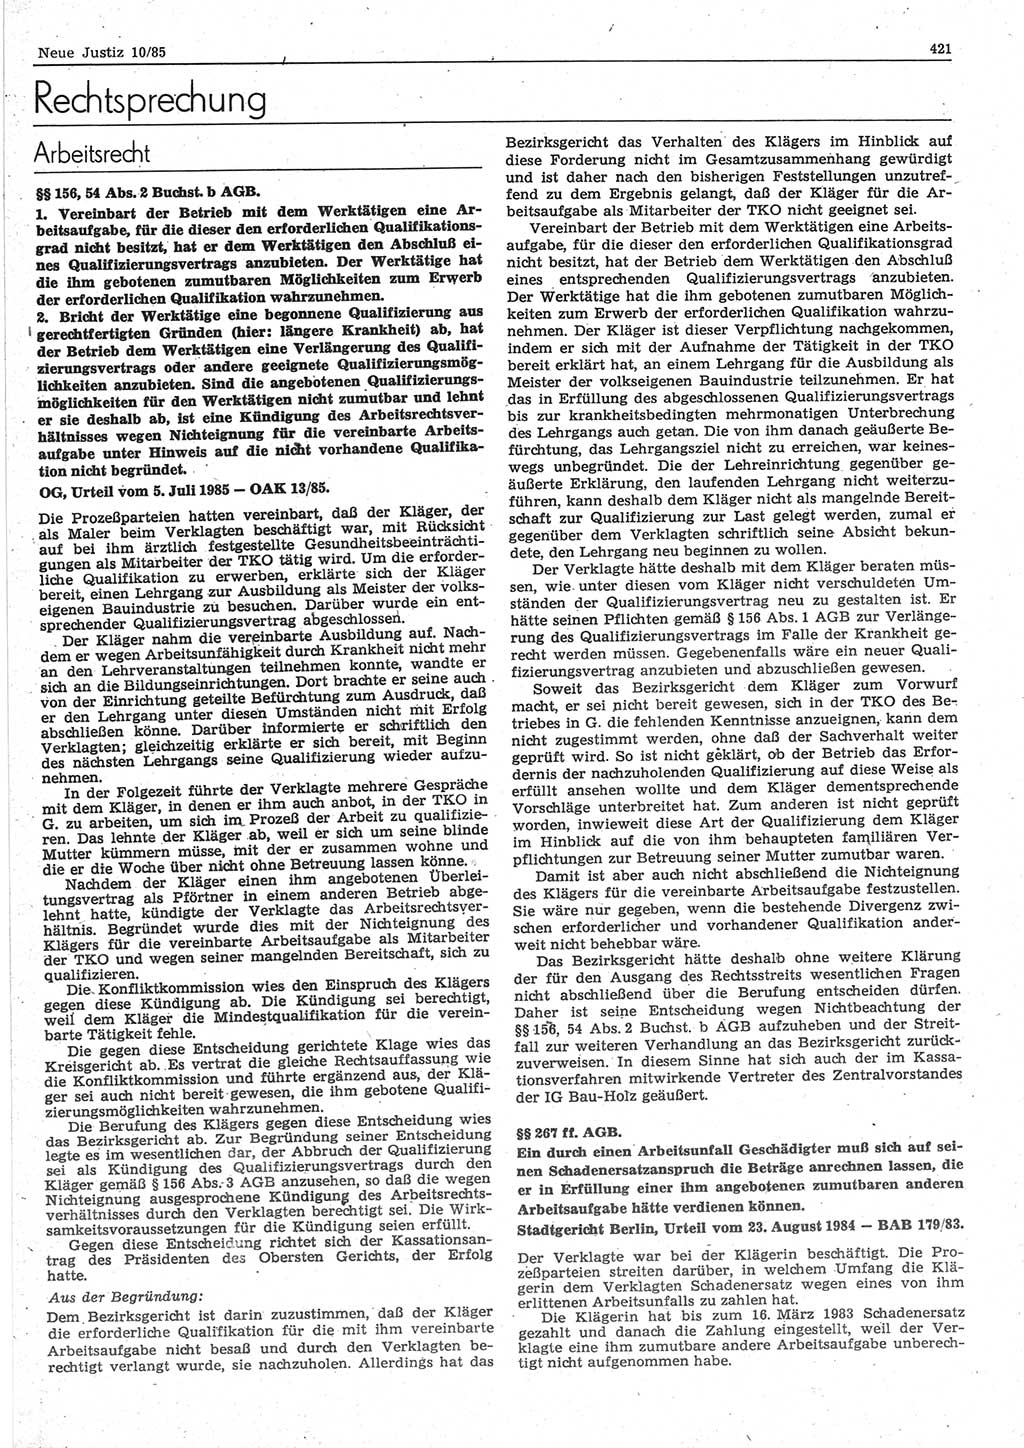 Neue Justiz (NJ), Zeitschrift für sozialistisches Recht und Gesetzlichkeit [Deutsche Demokratische Republik (DDR)], 39. Jahrgang 1985, Seite 421 (NJ DDR 1985, S. 421)